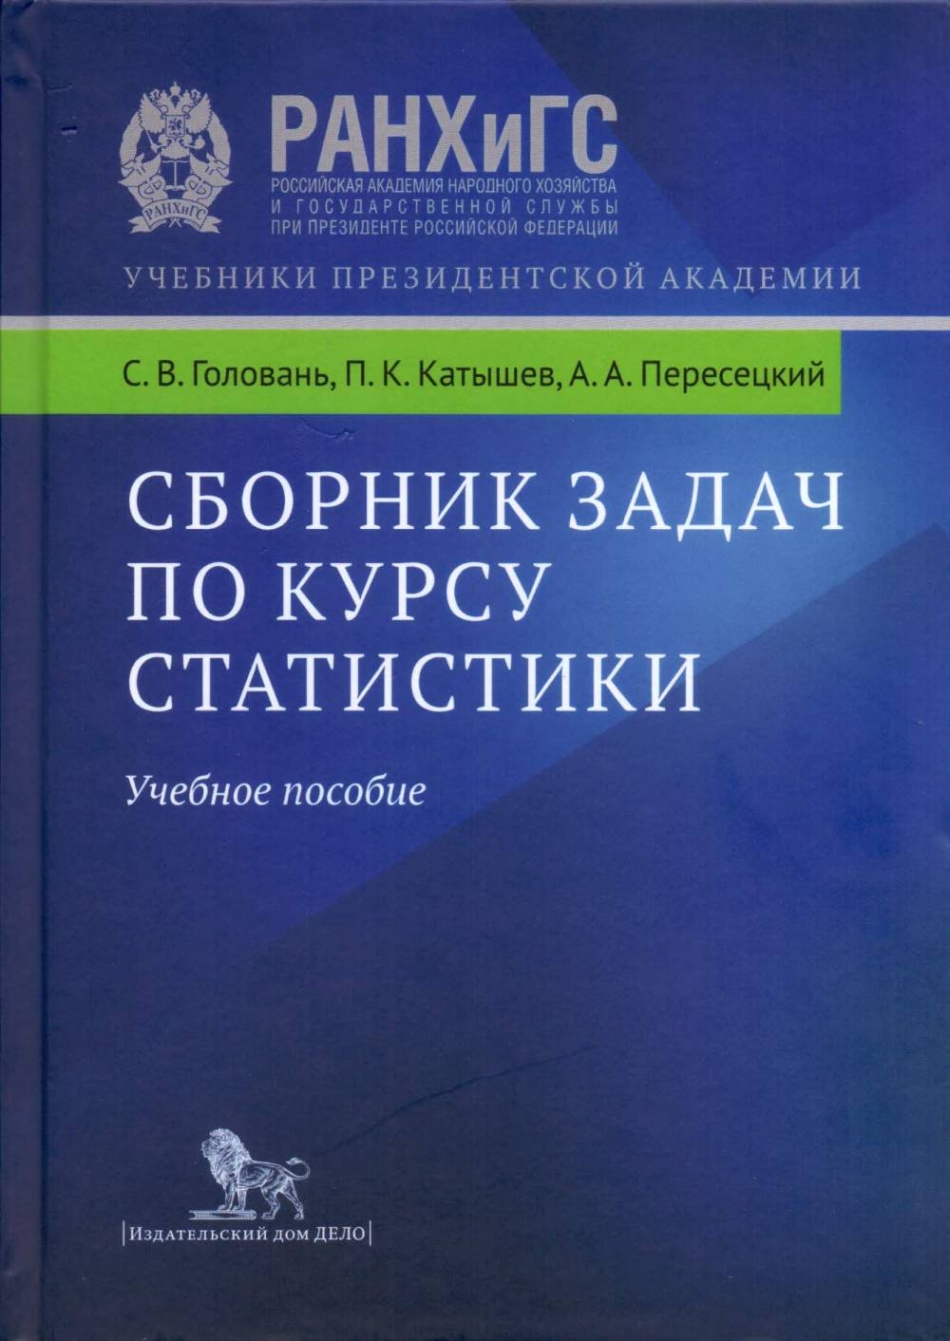 Катышев П.К., Пересецкий А.А., Головань С.В. Сборник задач по курсу статистики.  